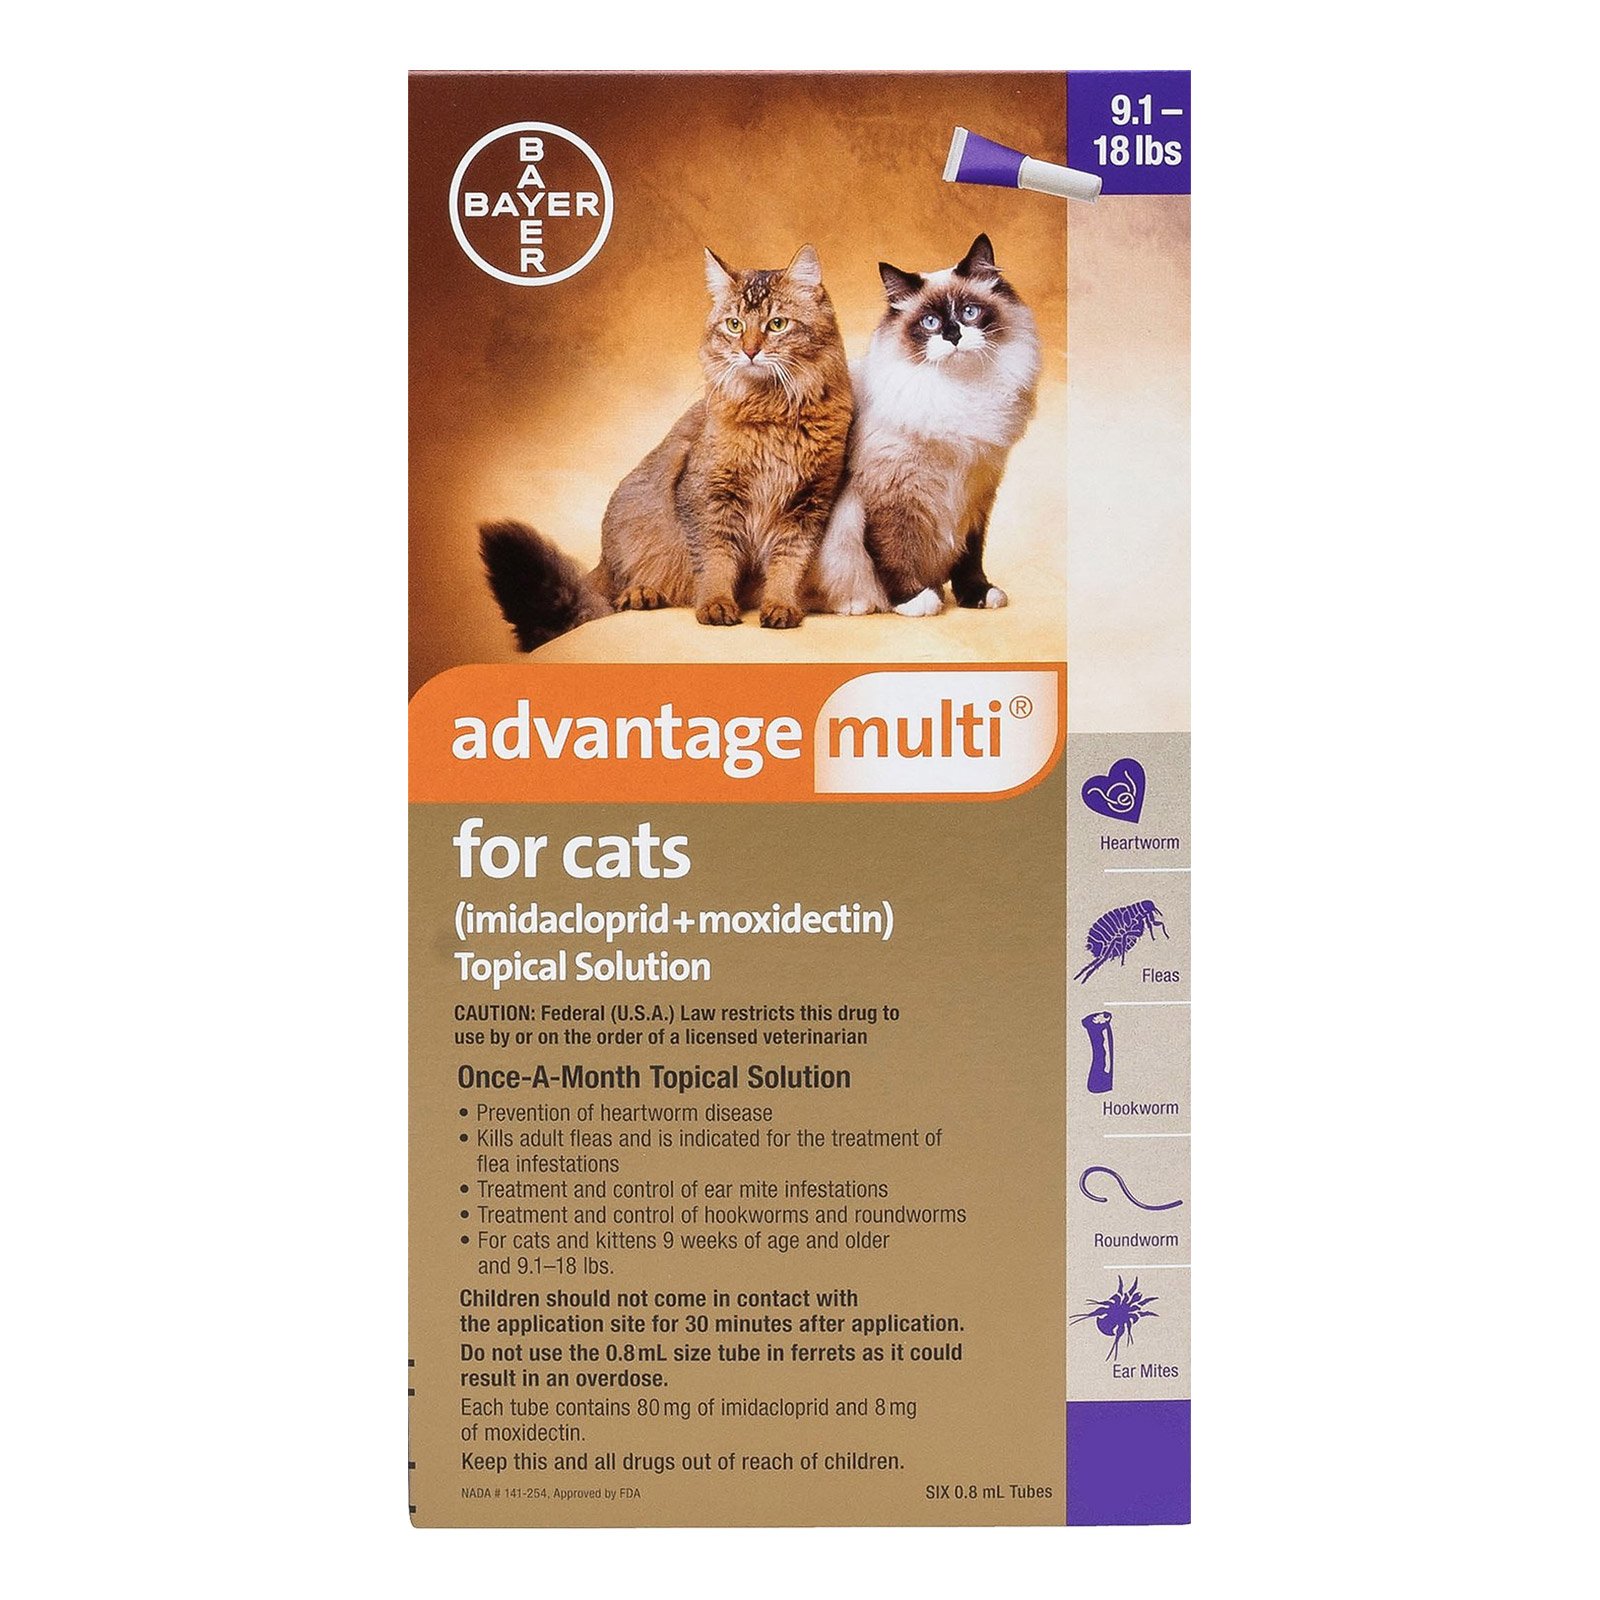 advantage-multi-advocate-cats-over-10lbs-purple.jpg